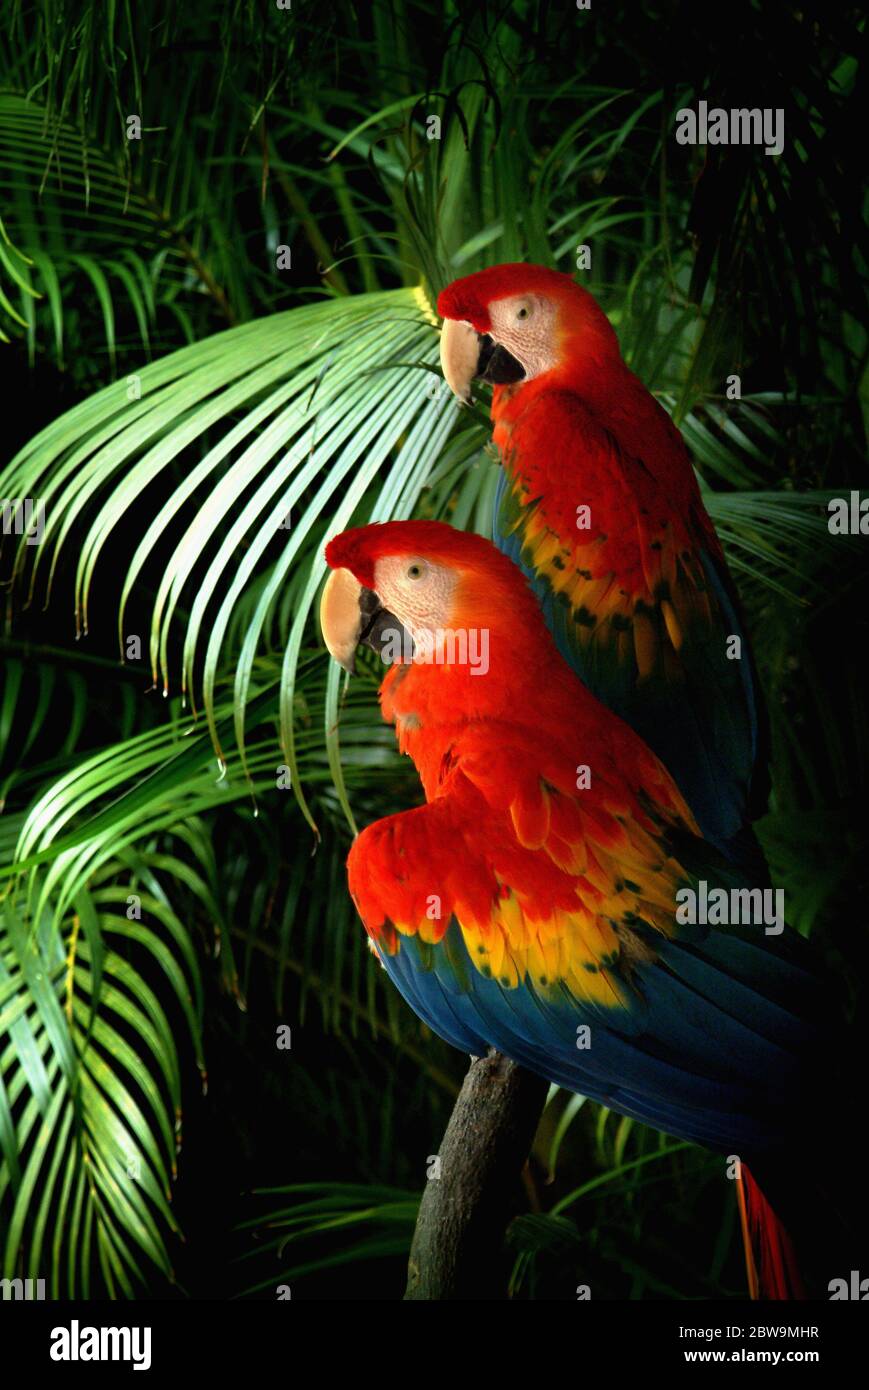 Estados Unidos, dos loros persiguiendo en la hoja de palma Foto de stock